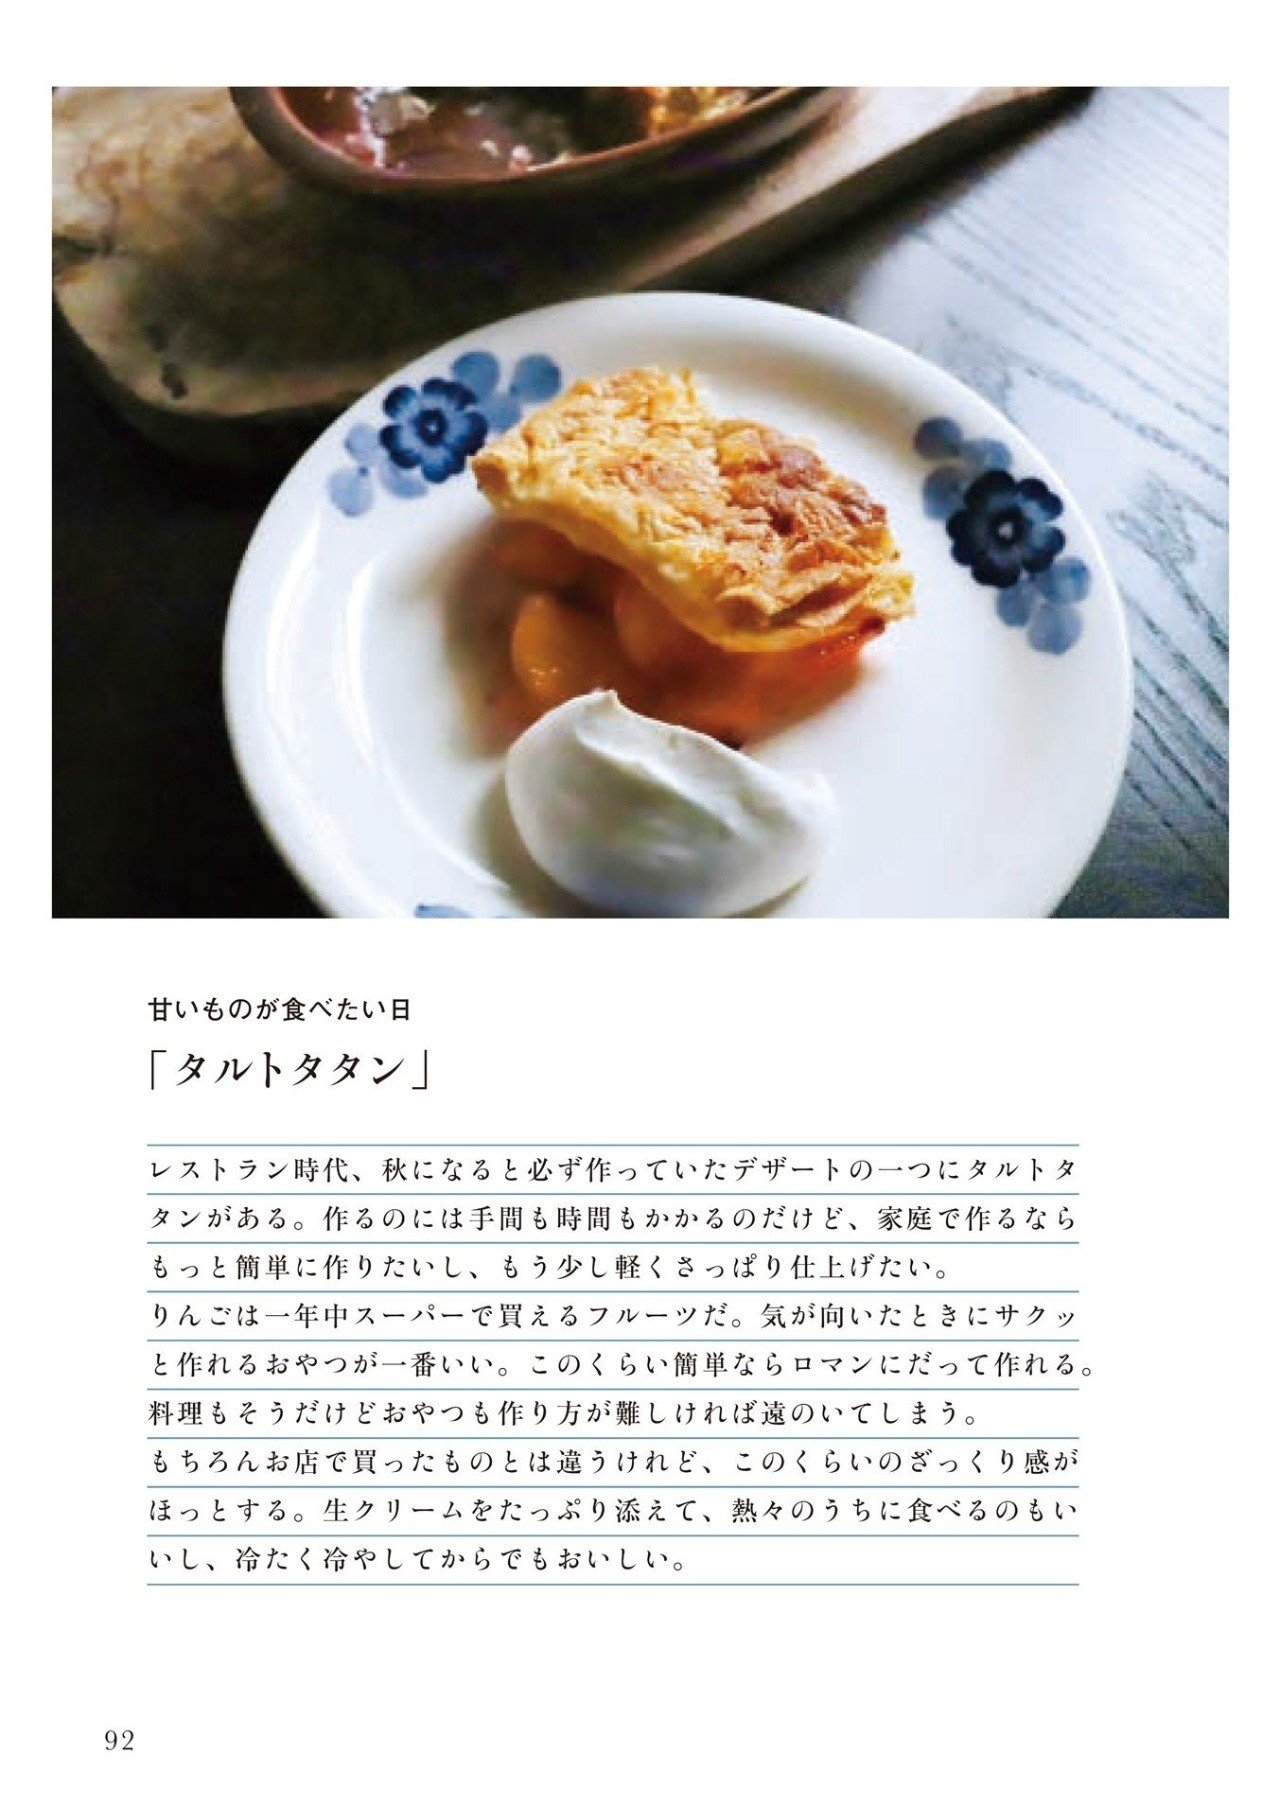 タルトタタン レモンケーキ 伝説の家政婦の絶品レシピ 幻冬舎 電子書籍 Note